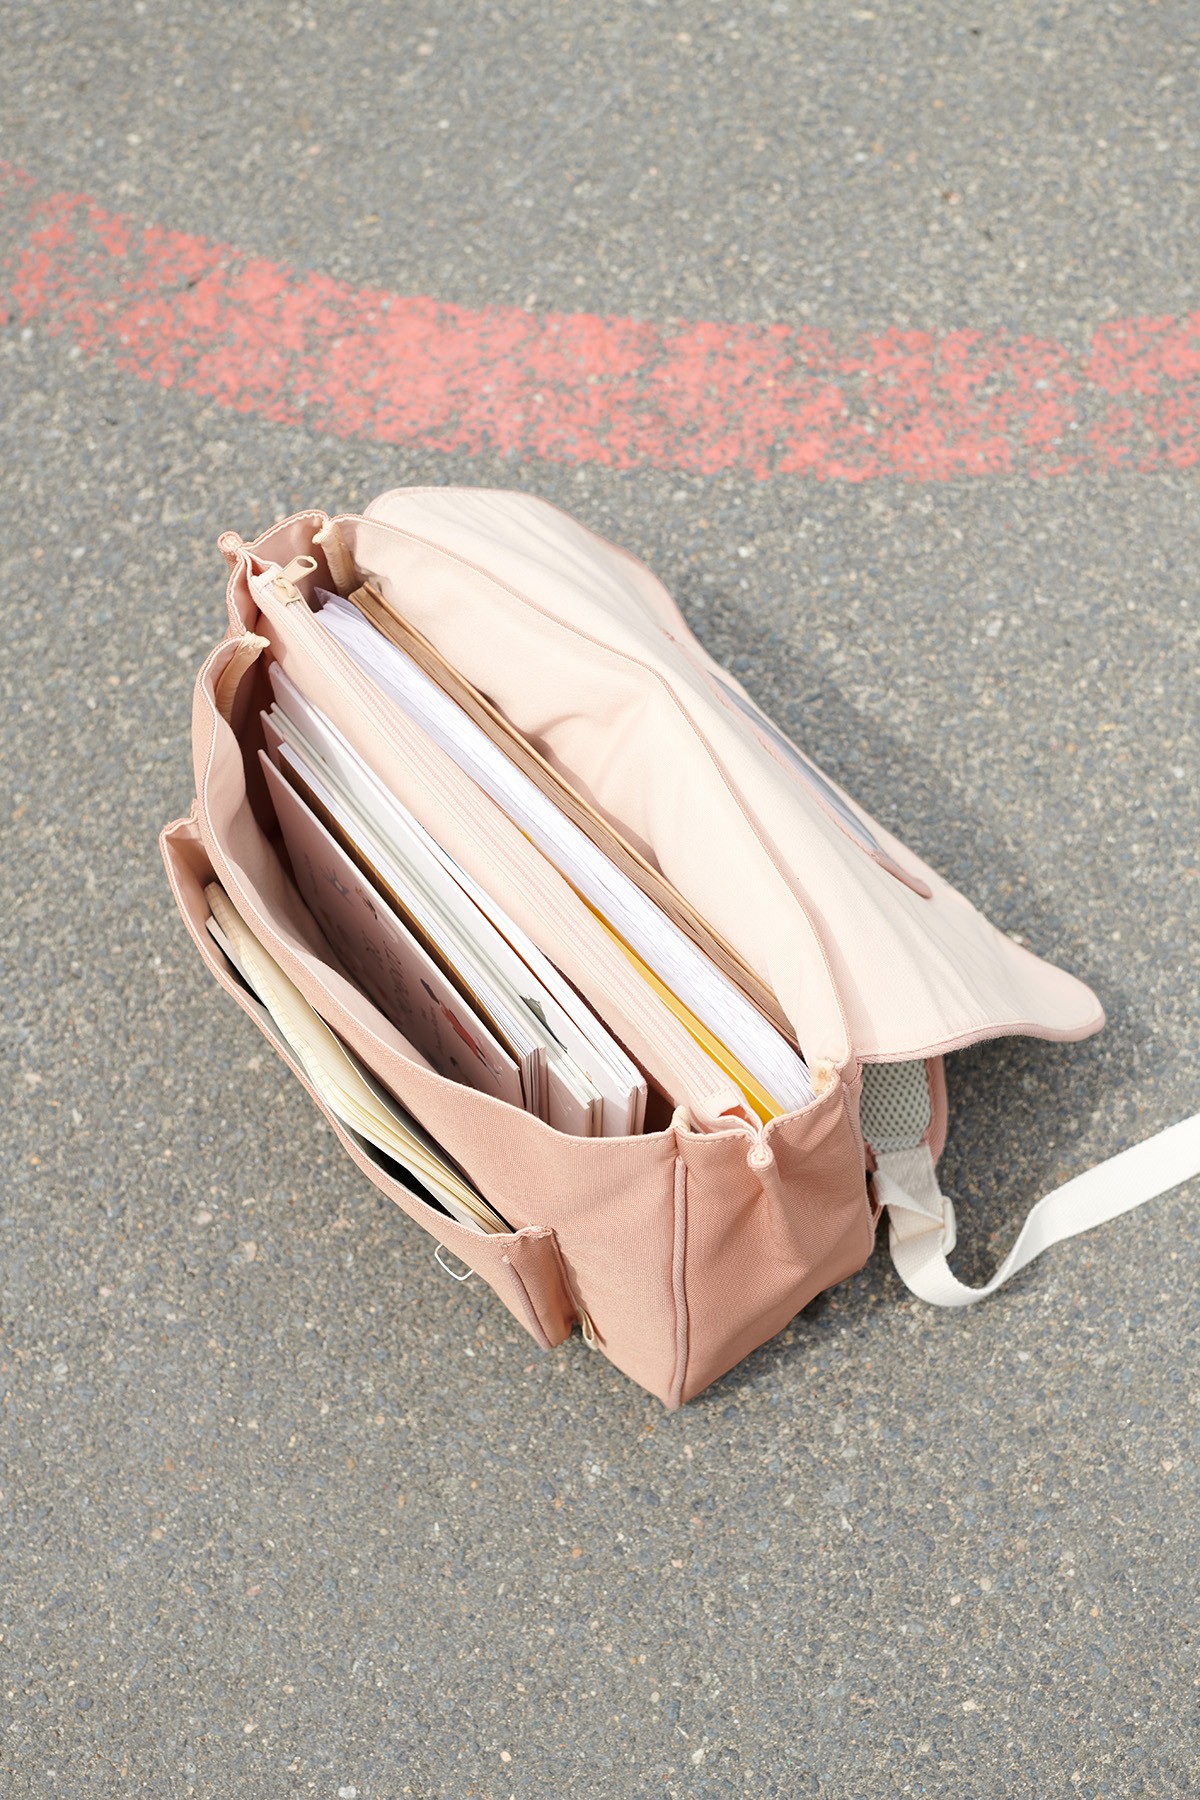 Schoolbag for children